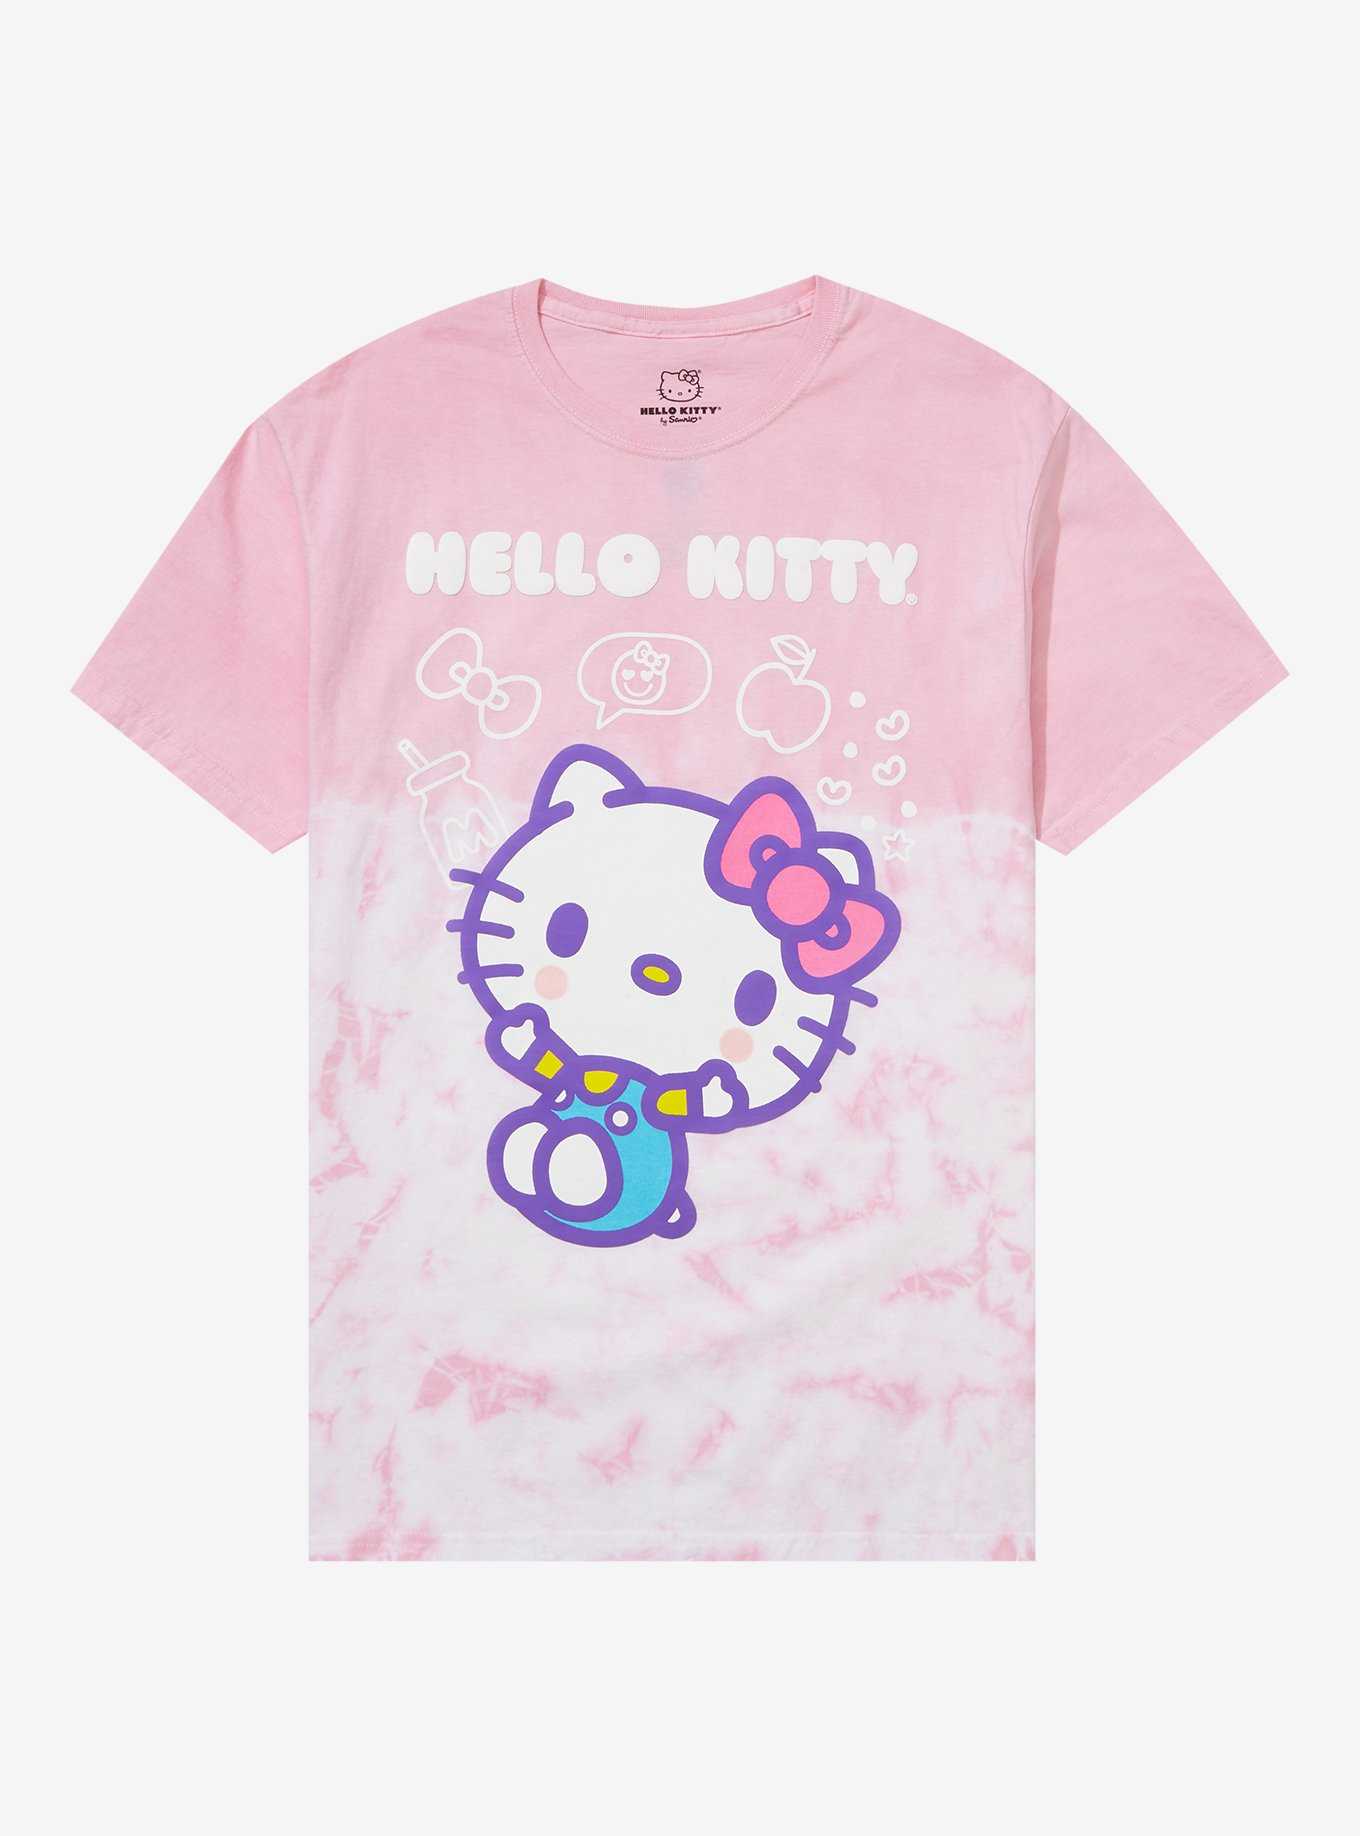 Jujutsu Kaisen X Hello Kitty And Friends Sukuna Boyfriend Fit Girls T-Shirt